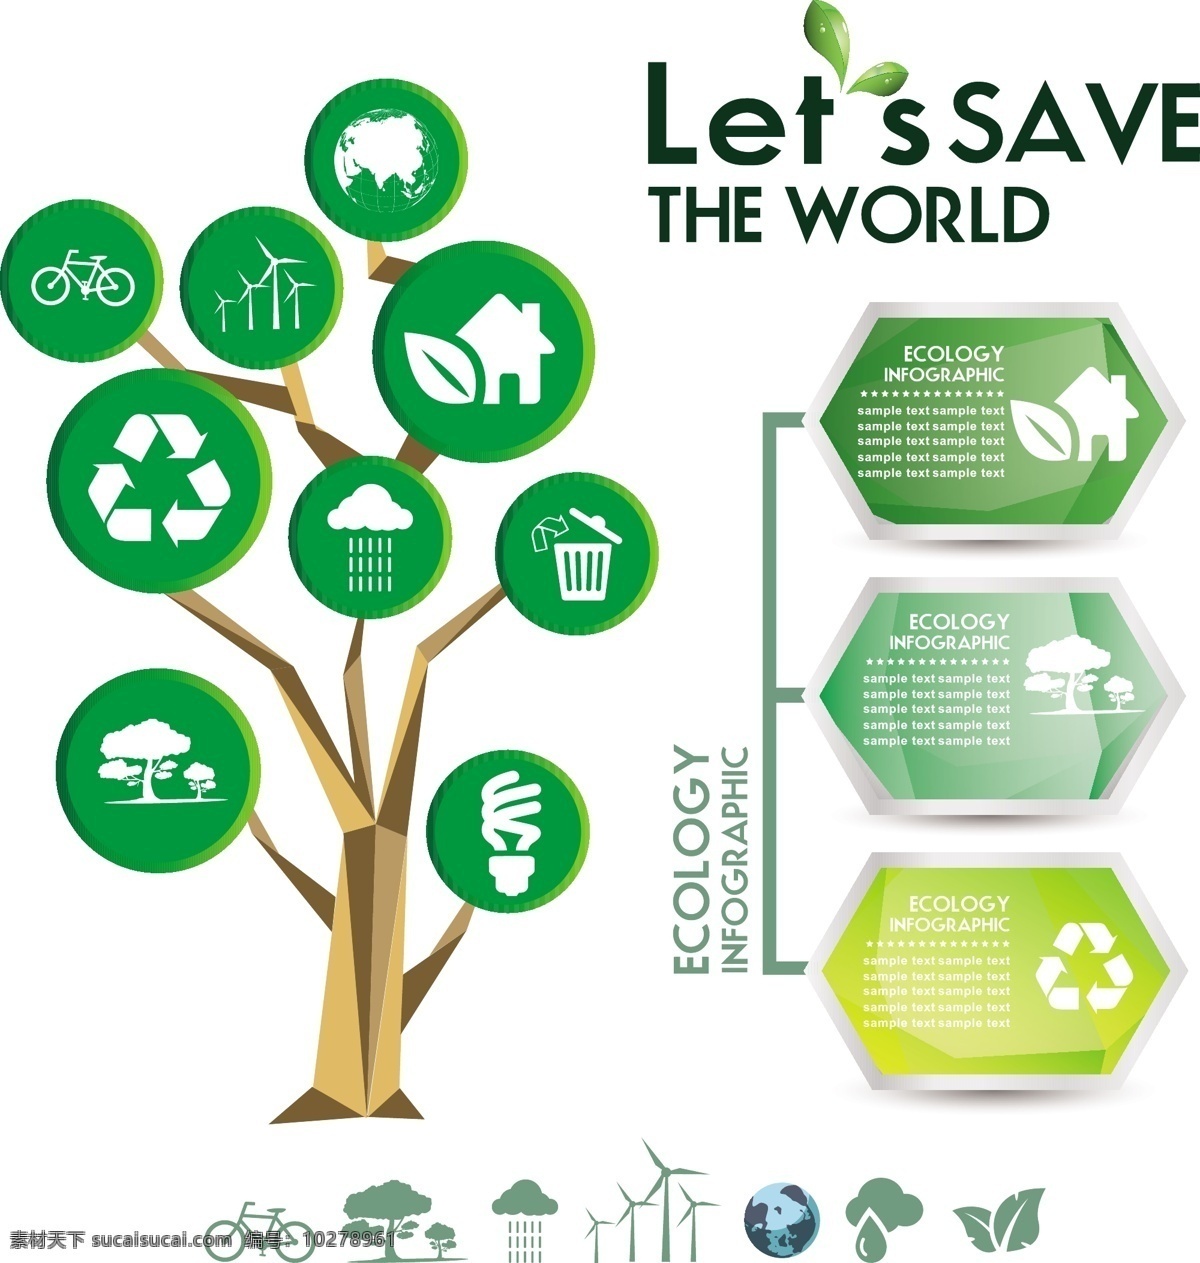 生态信息图表 环保 创意设计 eco 目录 绿色 循环 能源 节能 低碳 生态 回收 环保标志 ppt素材 底纹背景 商务金融 商业插画 白色